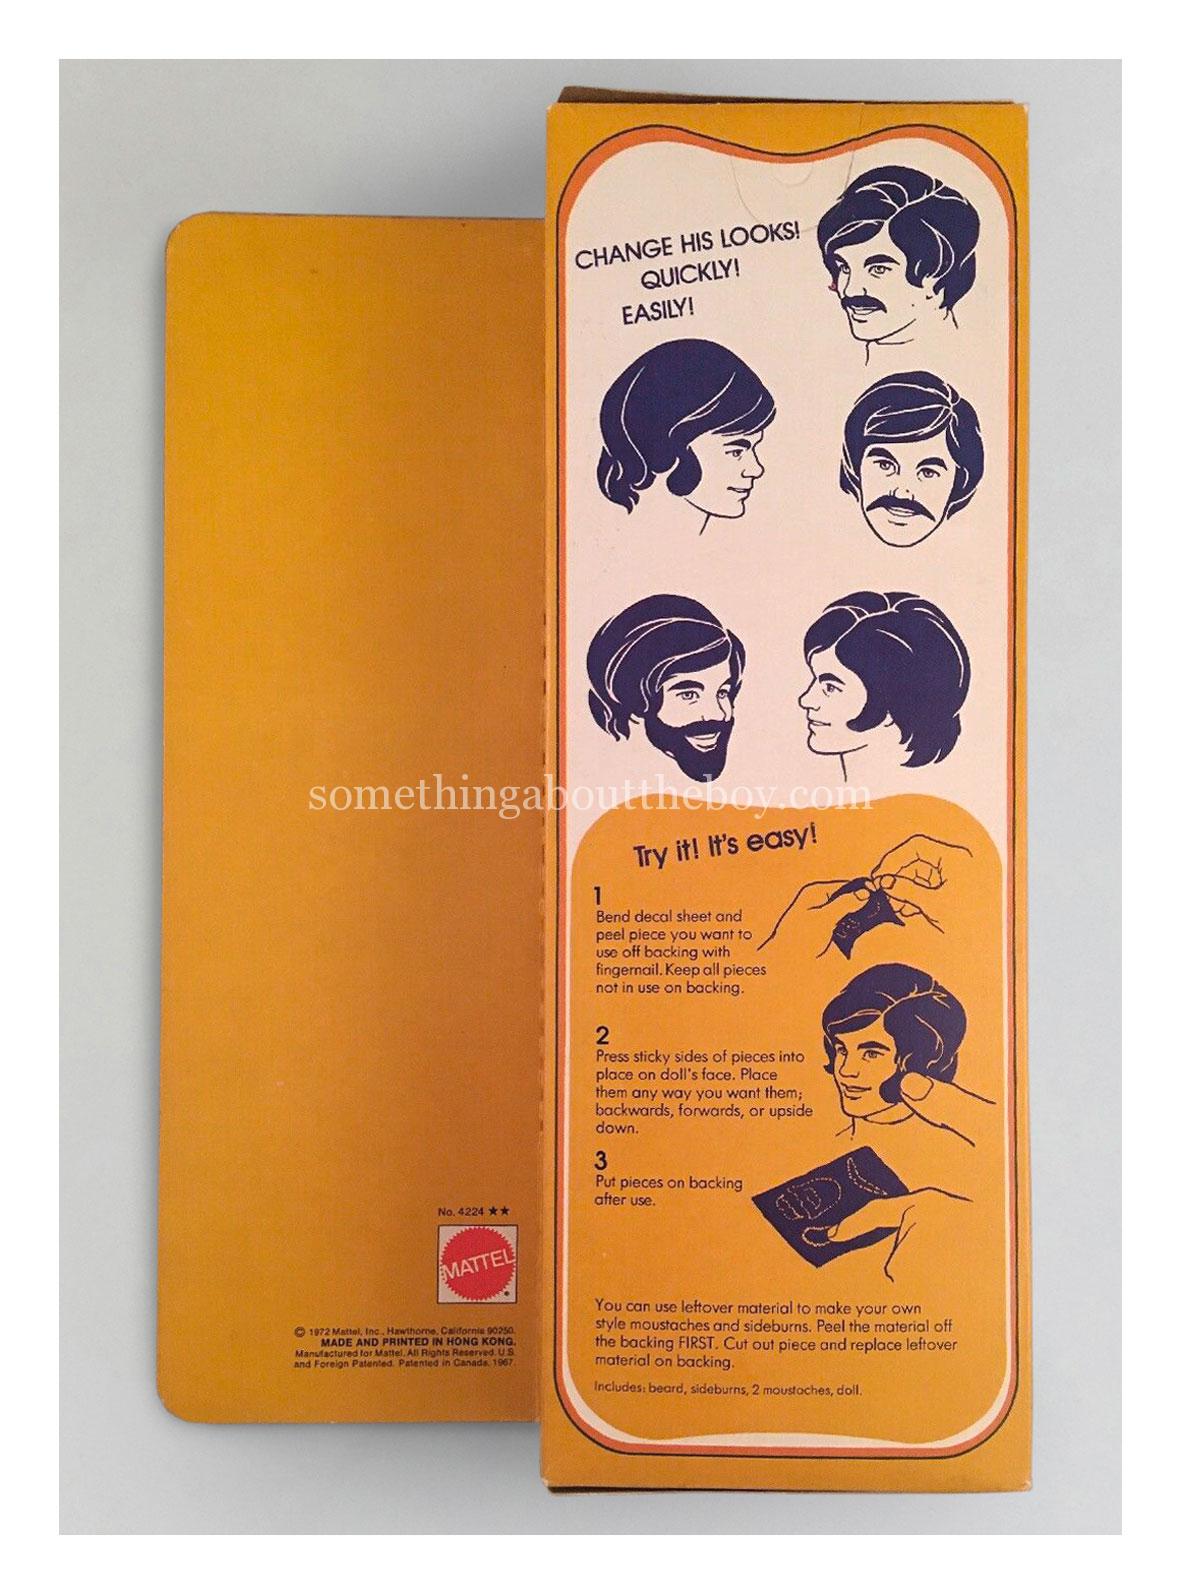 1973 #4224 Mod Hair Ken (Larger packaging made in Hong Kong)